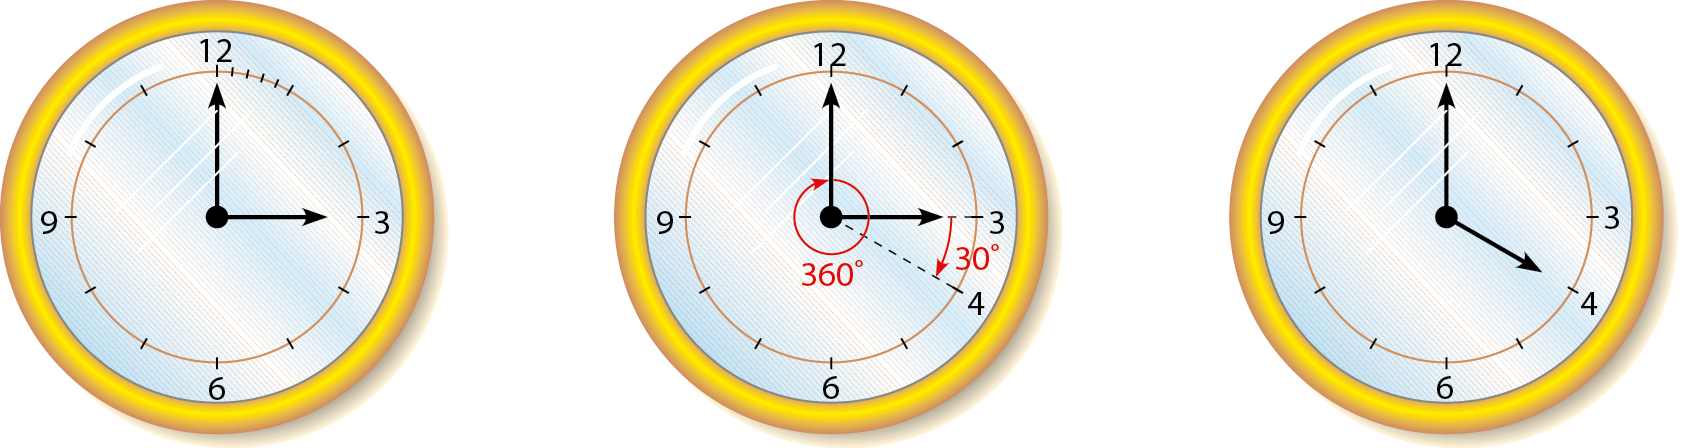 Ilustração. Três relógios circulares de ponteiros. O primeiro relógio tem indicado os números 3, 6, 9 e 12 E os outros dois relógios, os números 3, 4, 6, 9, 12. Da esquerda para direita: relógio com ponteiro menor no 3 e maior no 12. Relógio com ponteiro menor no 3 e maior no 12. Linha tracejada do centro até 4 formando ângulo de 30 graus e ao redor do ponto central, seta circular de 360 graus. O relógio à direita com ponteiro menor no 4 e maior no 12